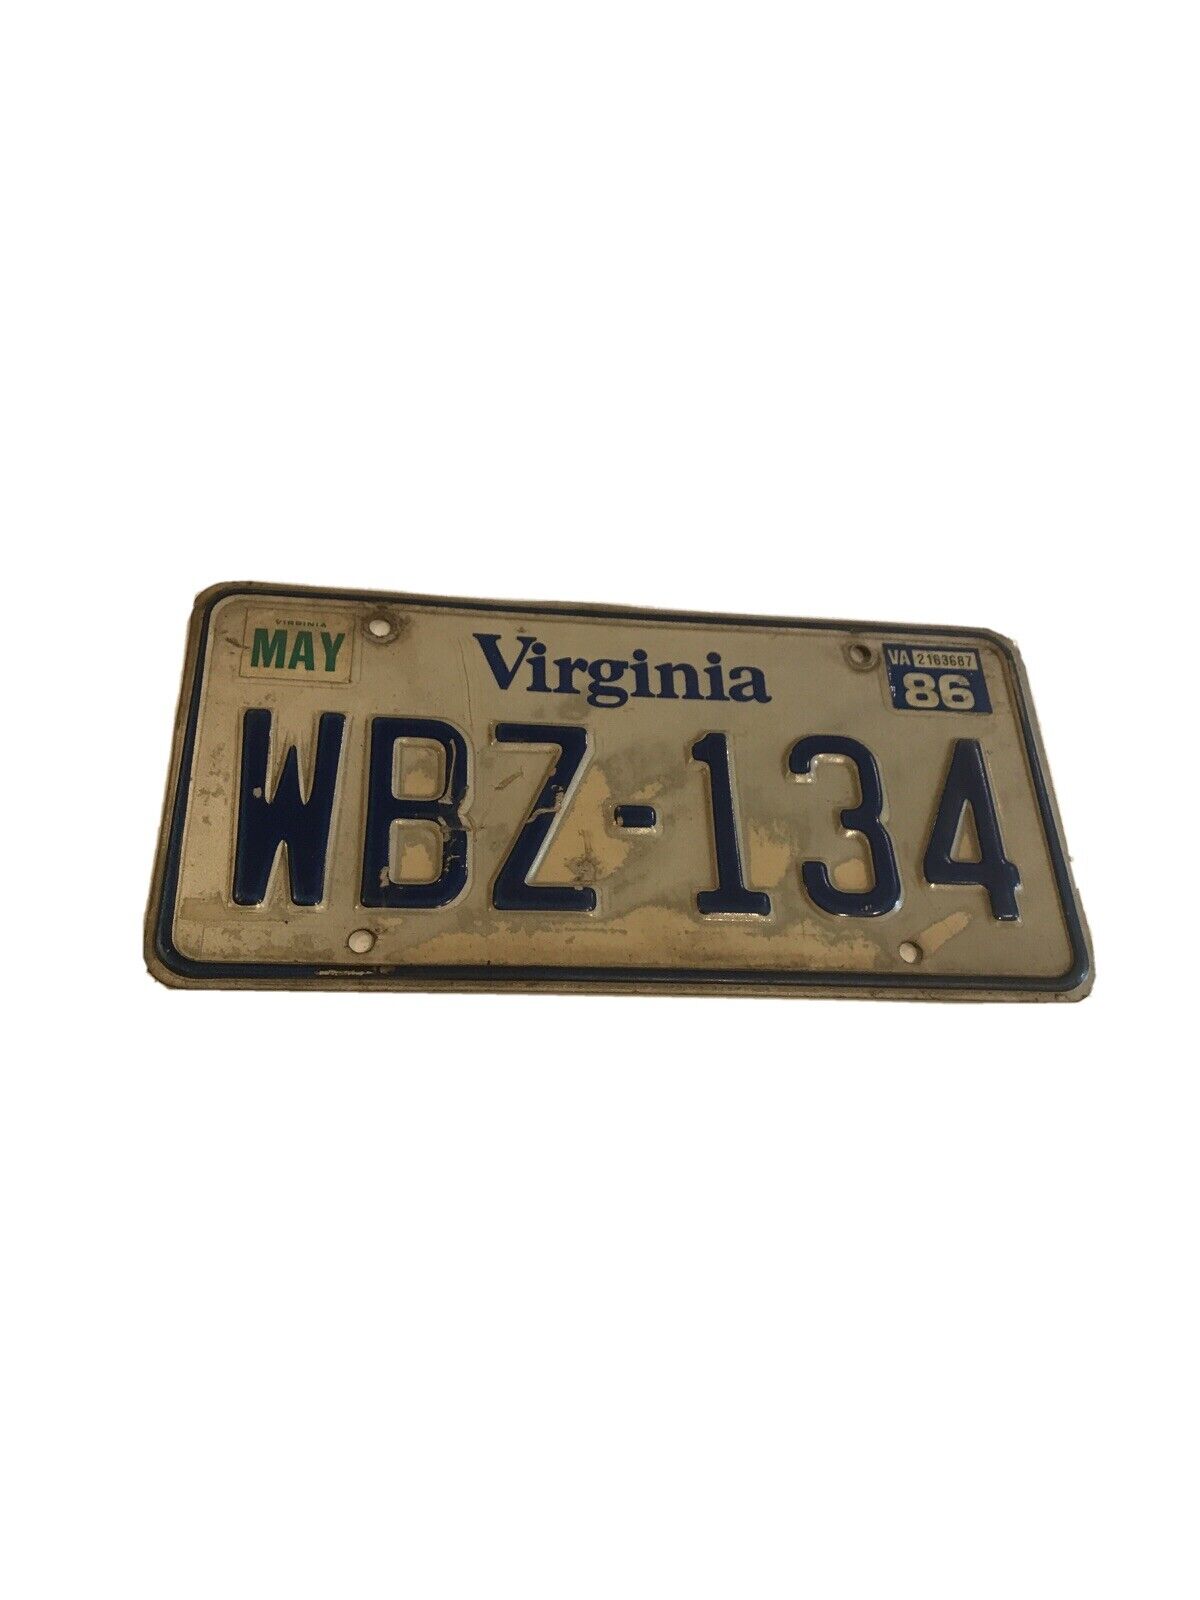 Vintage Virginia License Plate WBZ-134 Tanio, wyprzedaż